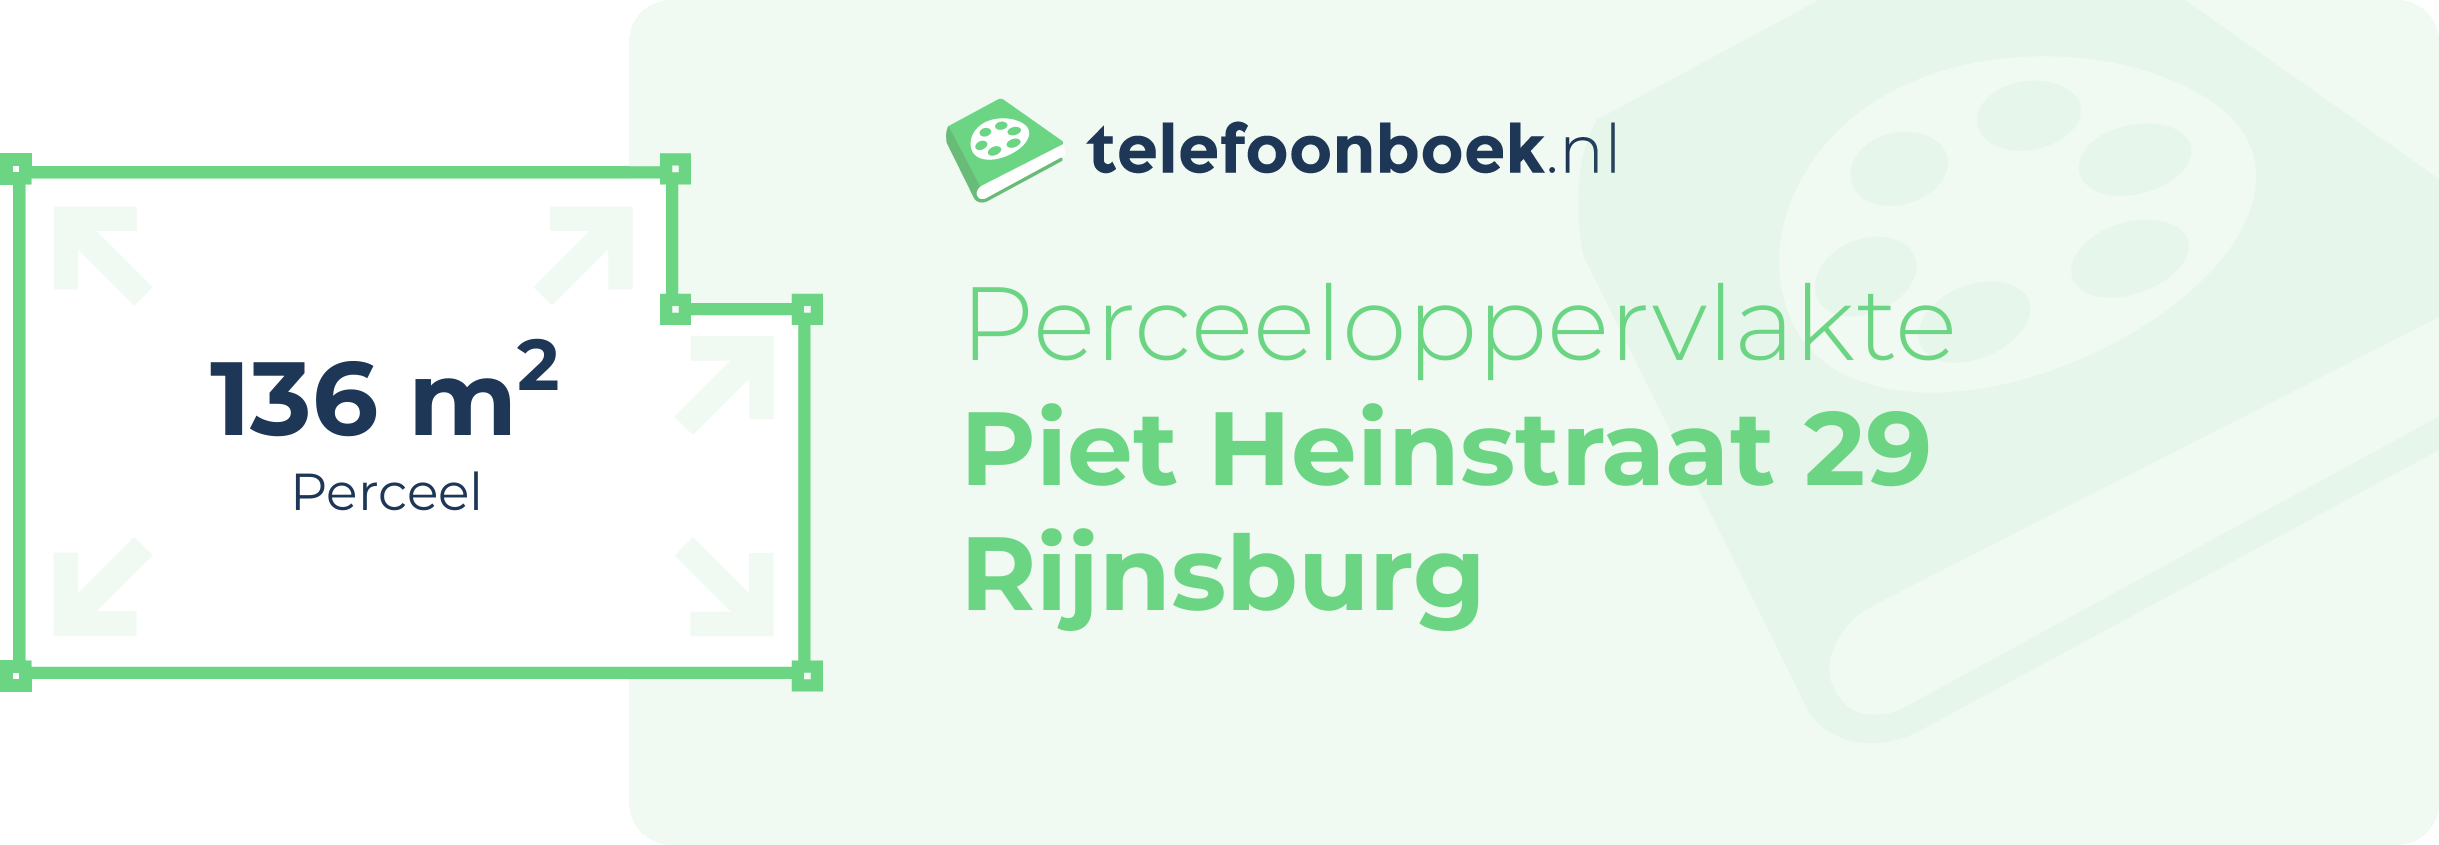 Perceeloppervlakte Piet Heinstraat 29 Rijnsburg